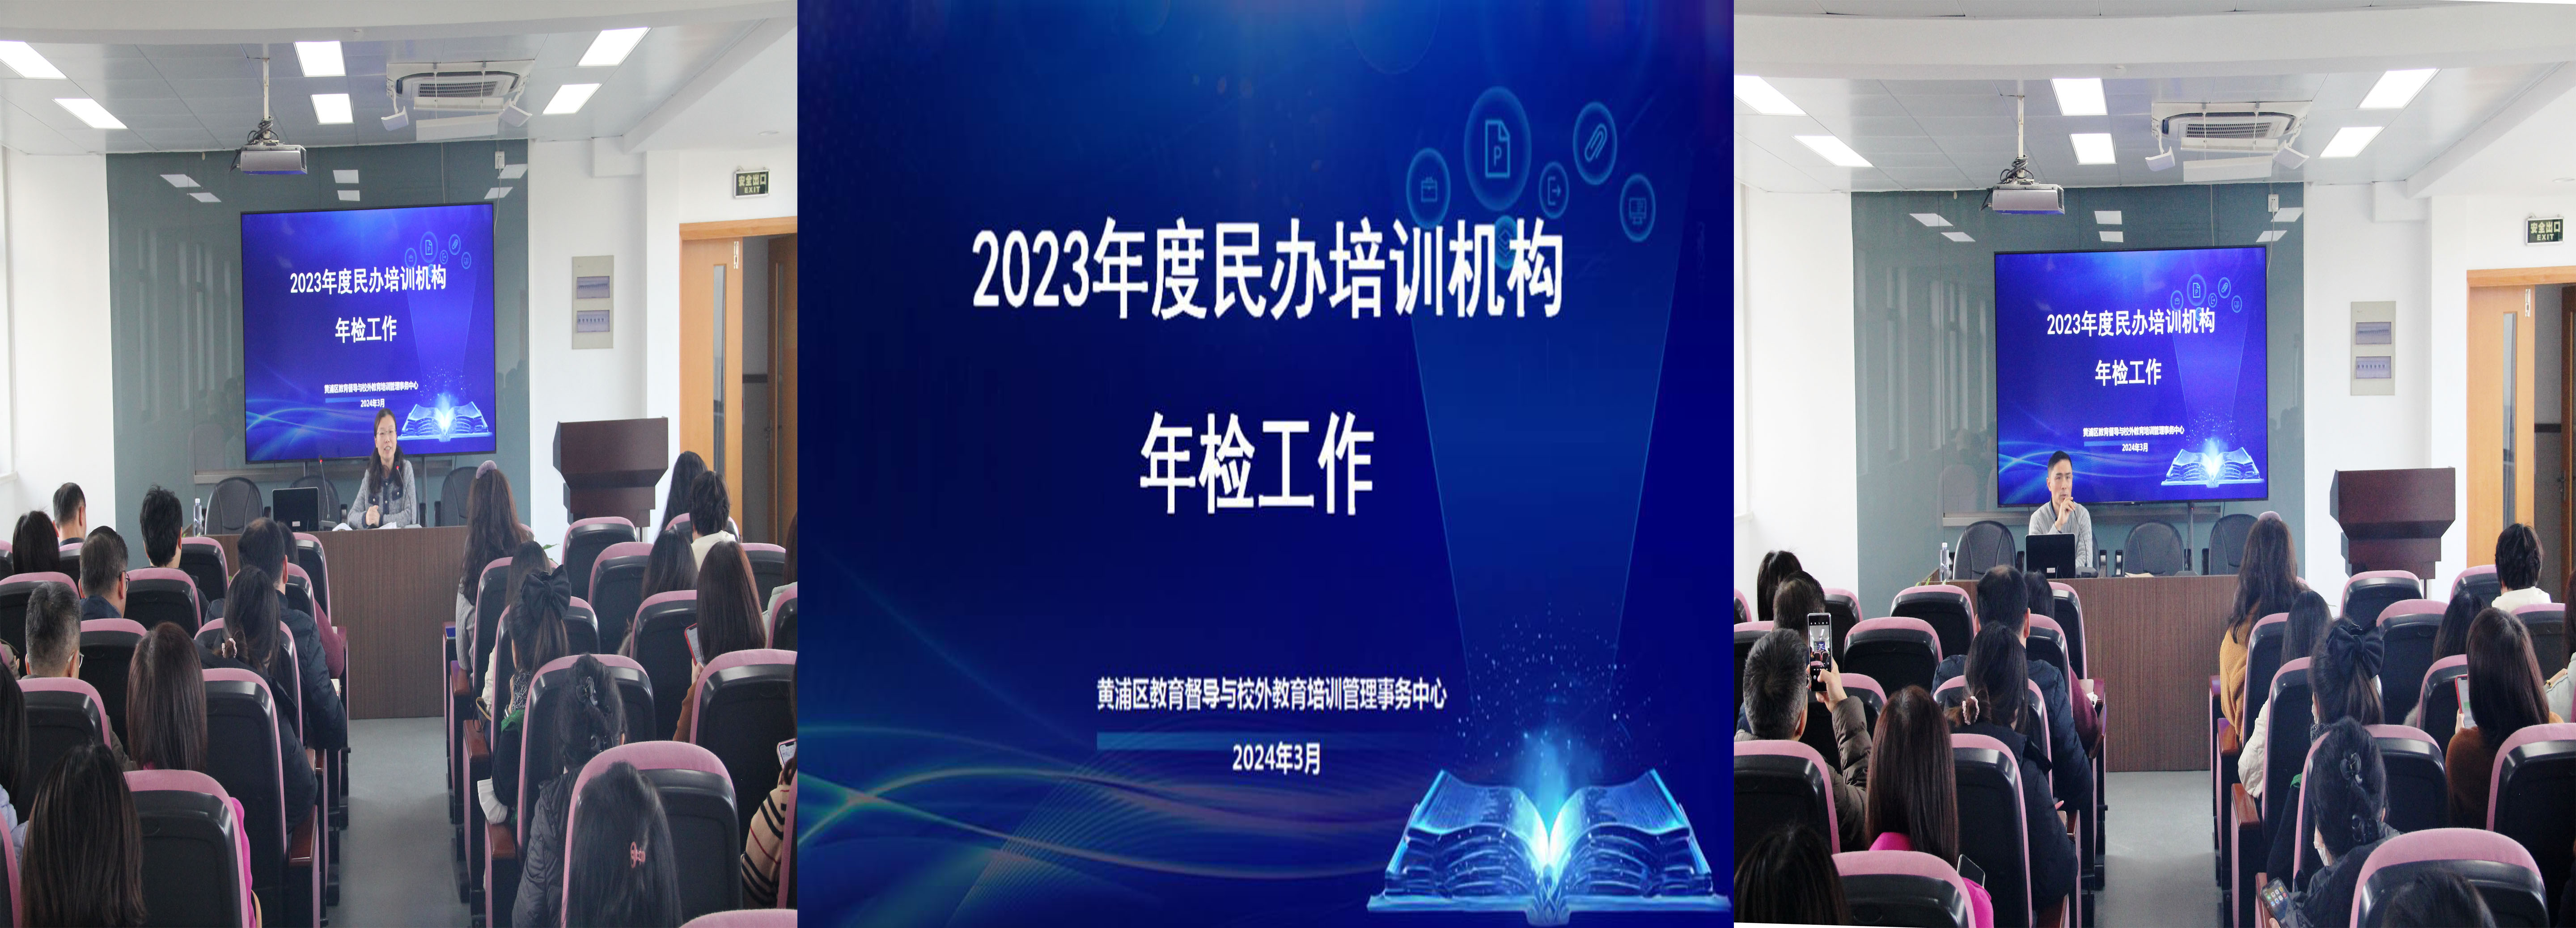 黄浦区召开 2023 年度民办培训机构年检工作会议